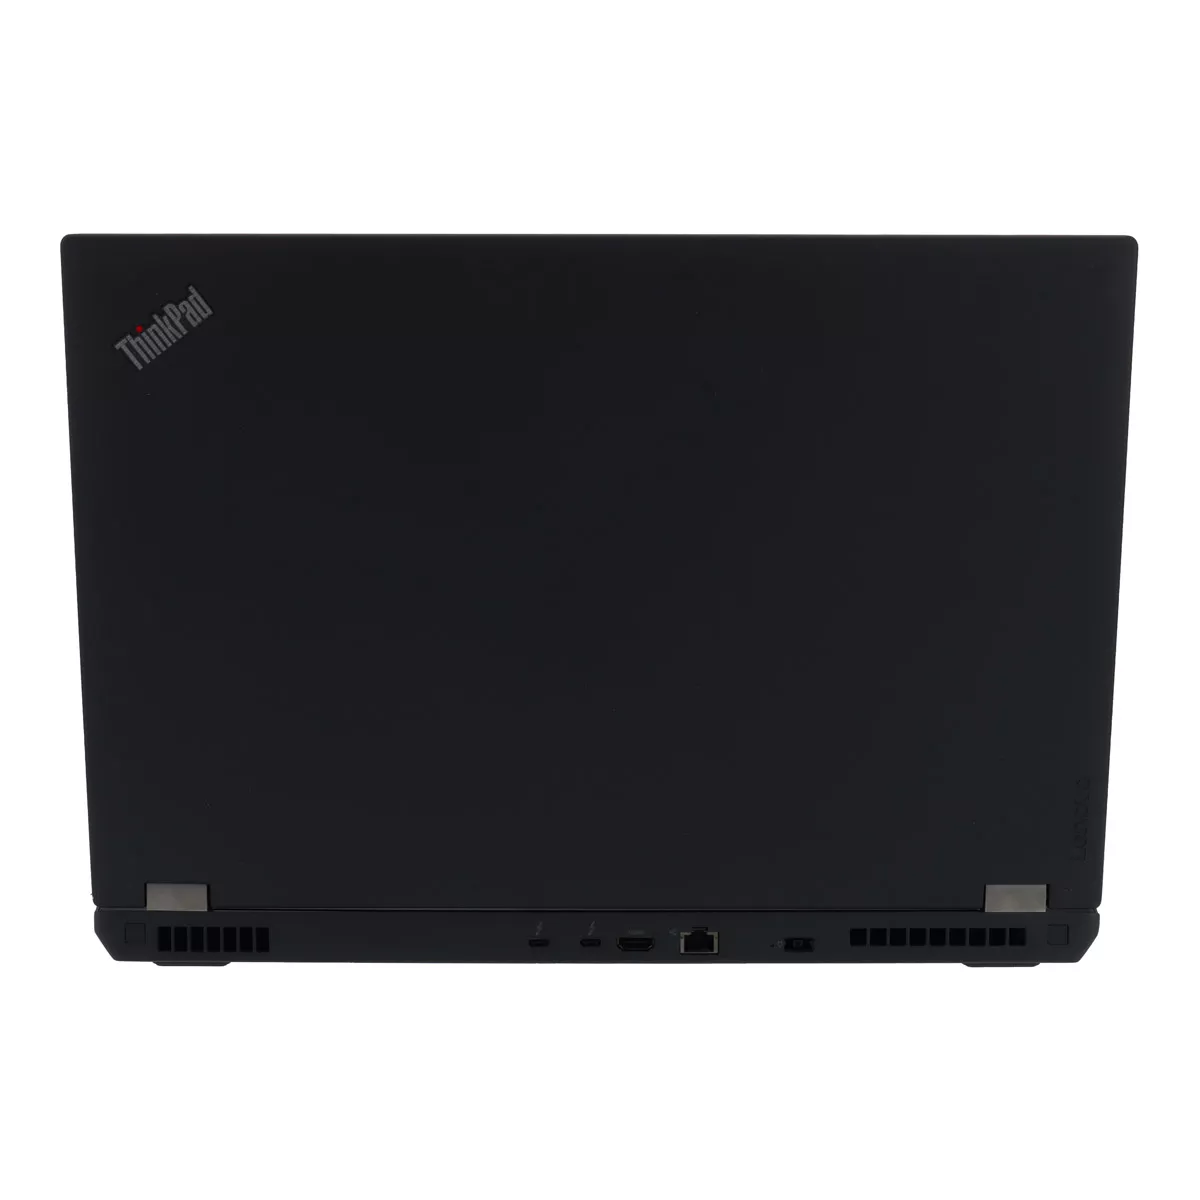 Lenovo ThinkPad P70 Core i7 6700HQ nVidia Quadro M600M 16 GB 500 GB M.2 SSD Webcam A+